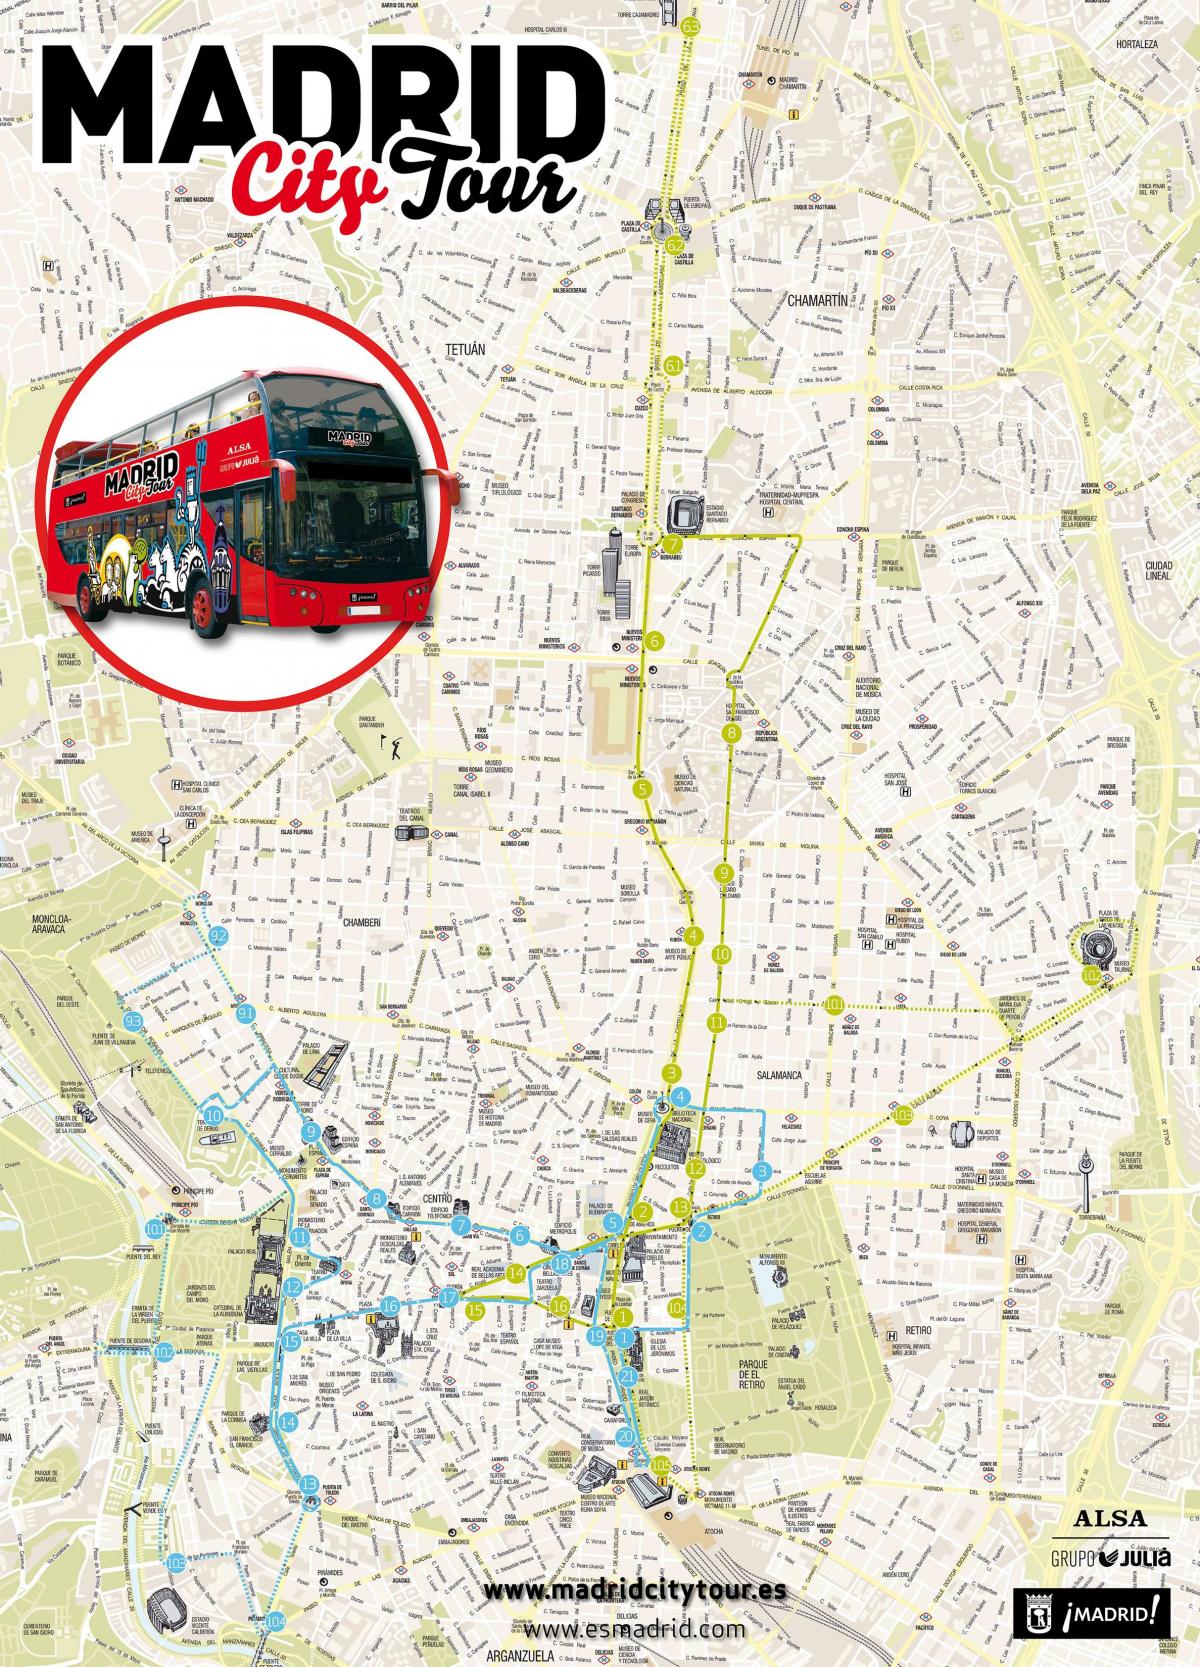 Madrid sightseeing bus kort